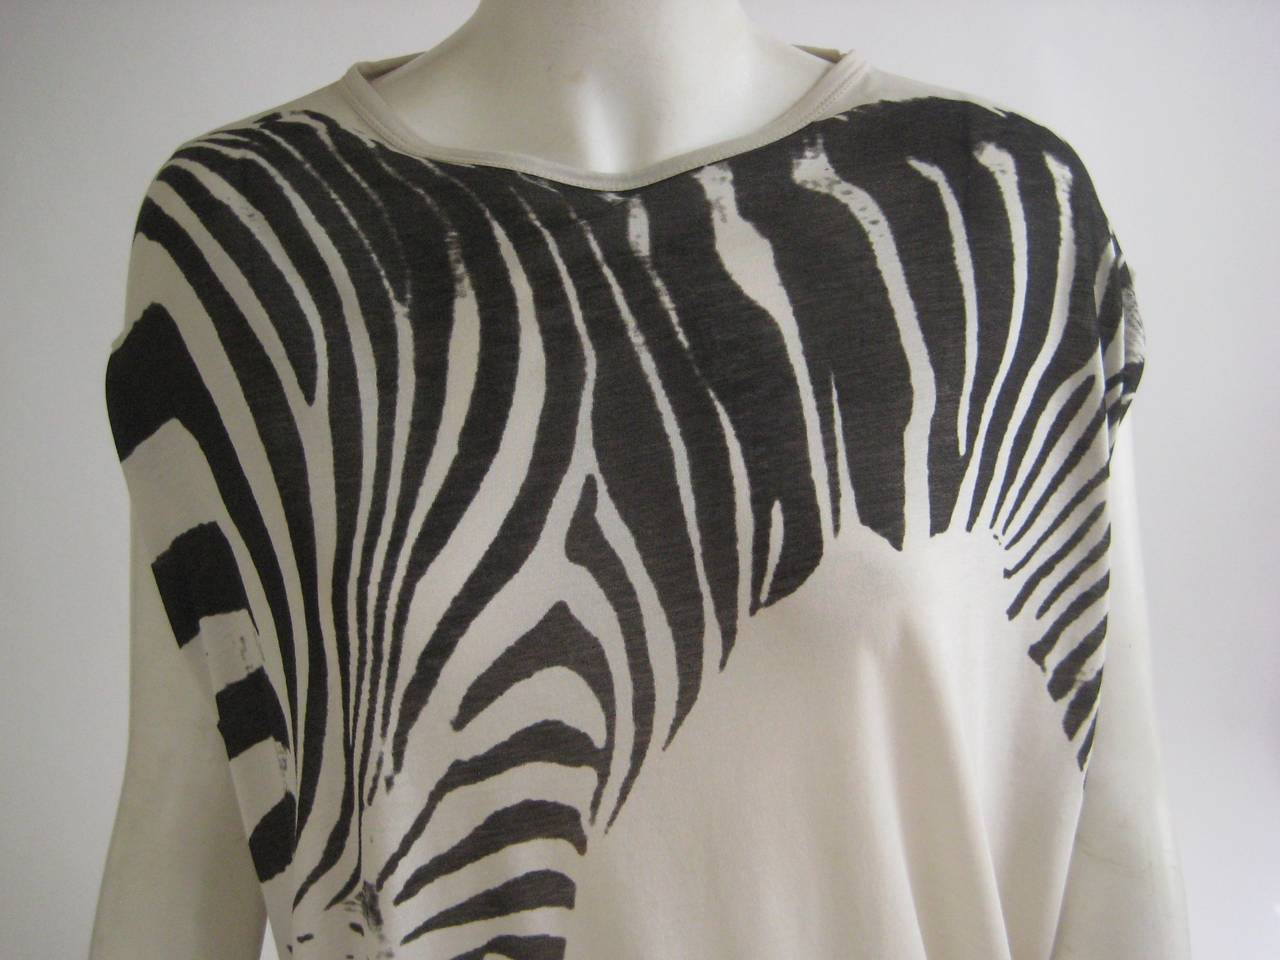 Rare Stella McCartney Zebra T Shirt
100% baumwolle cotton
Labeled size 40